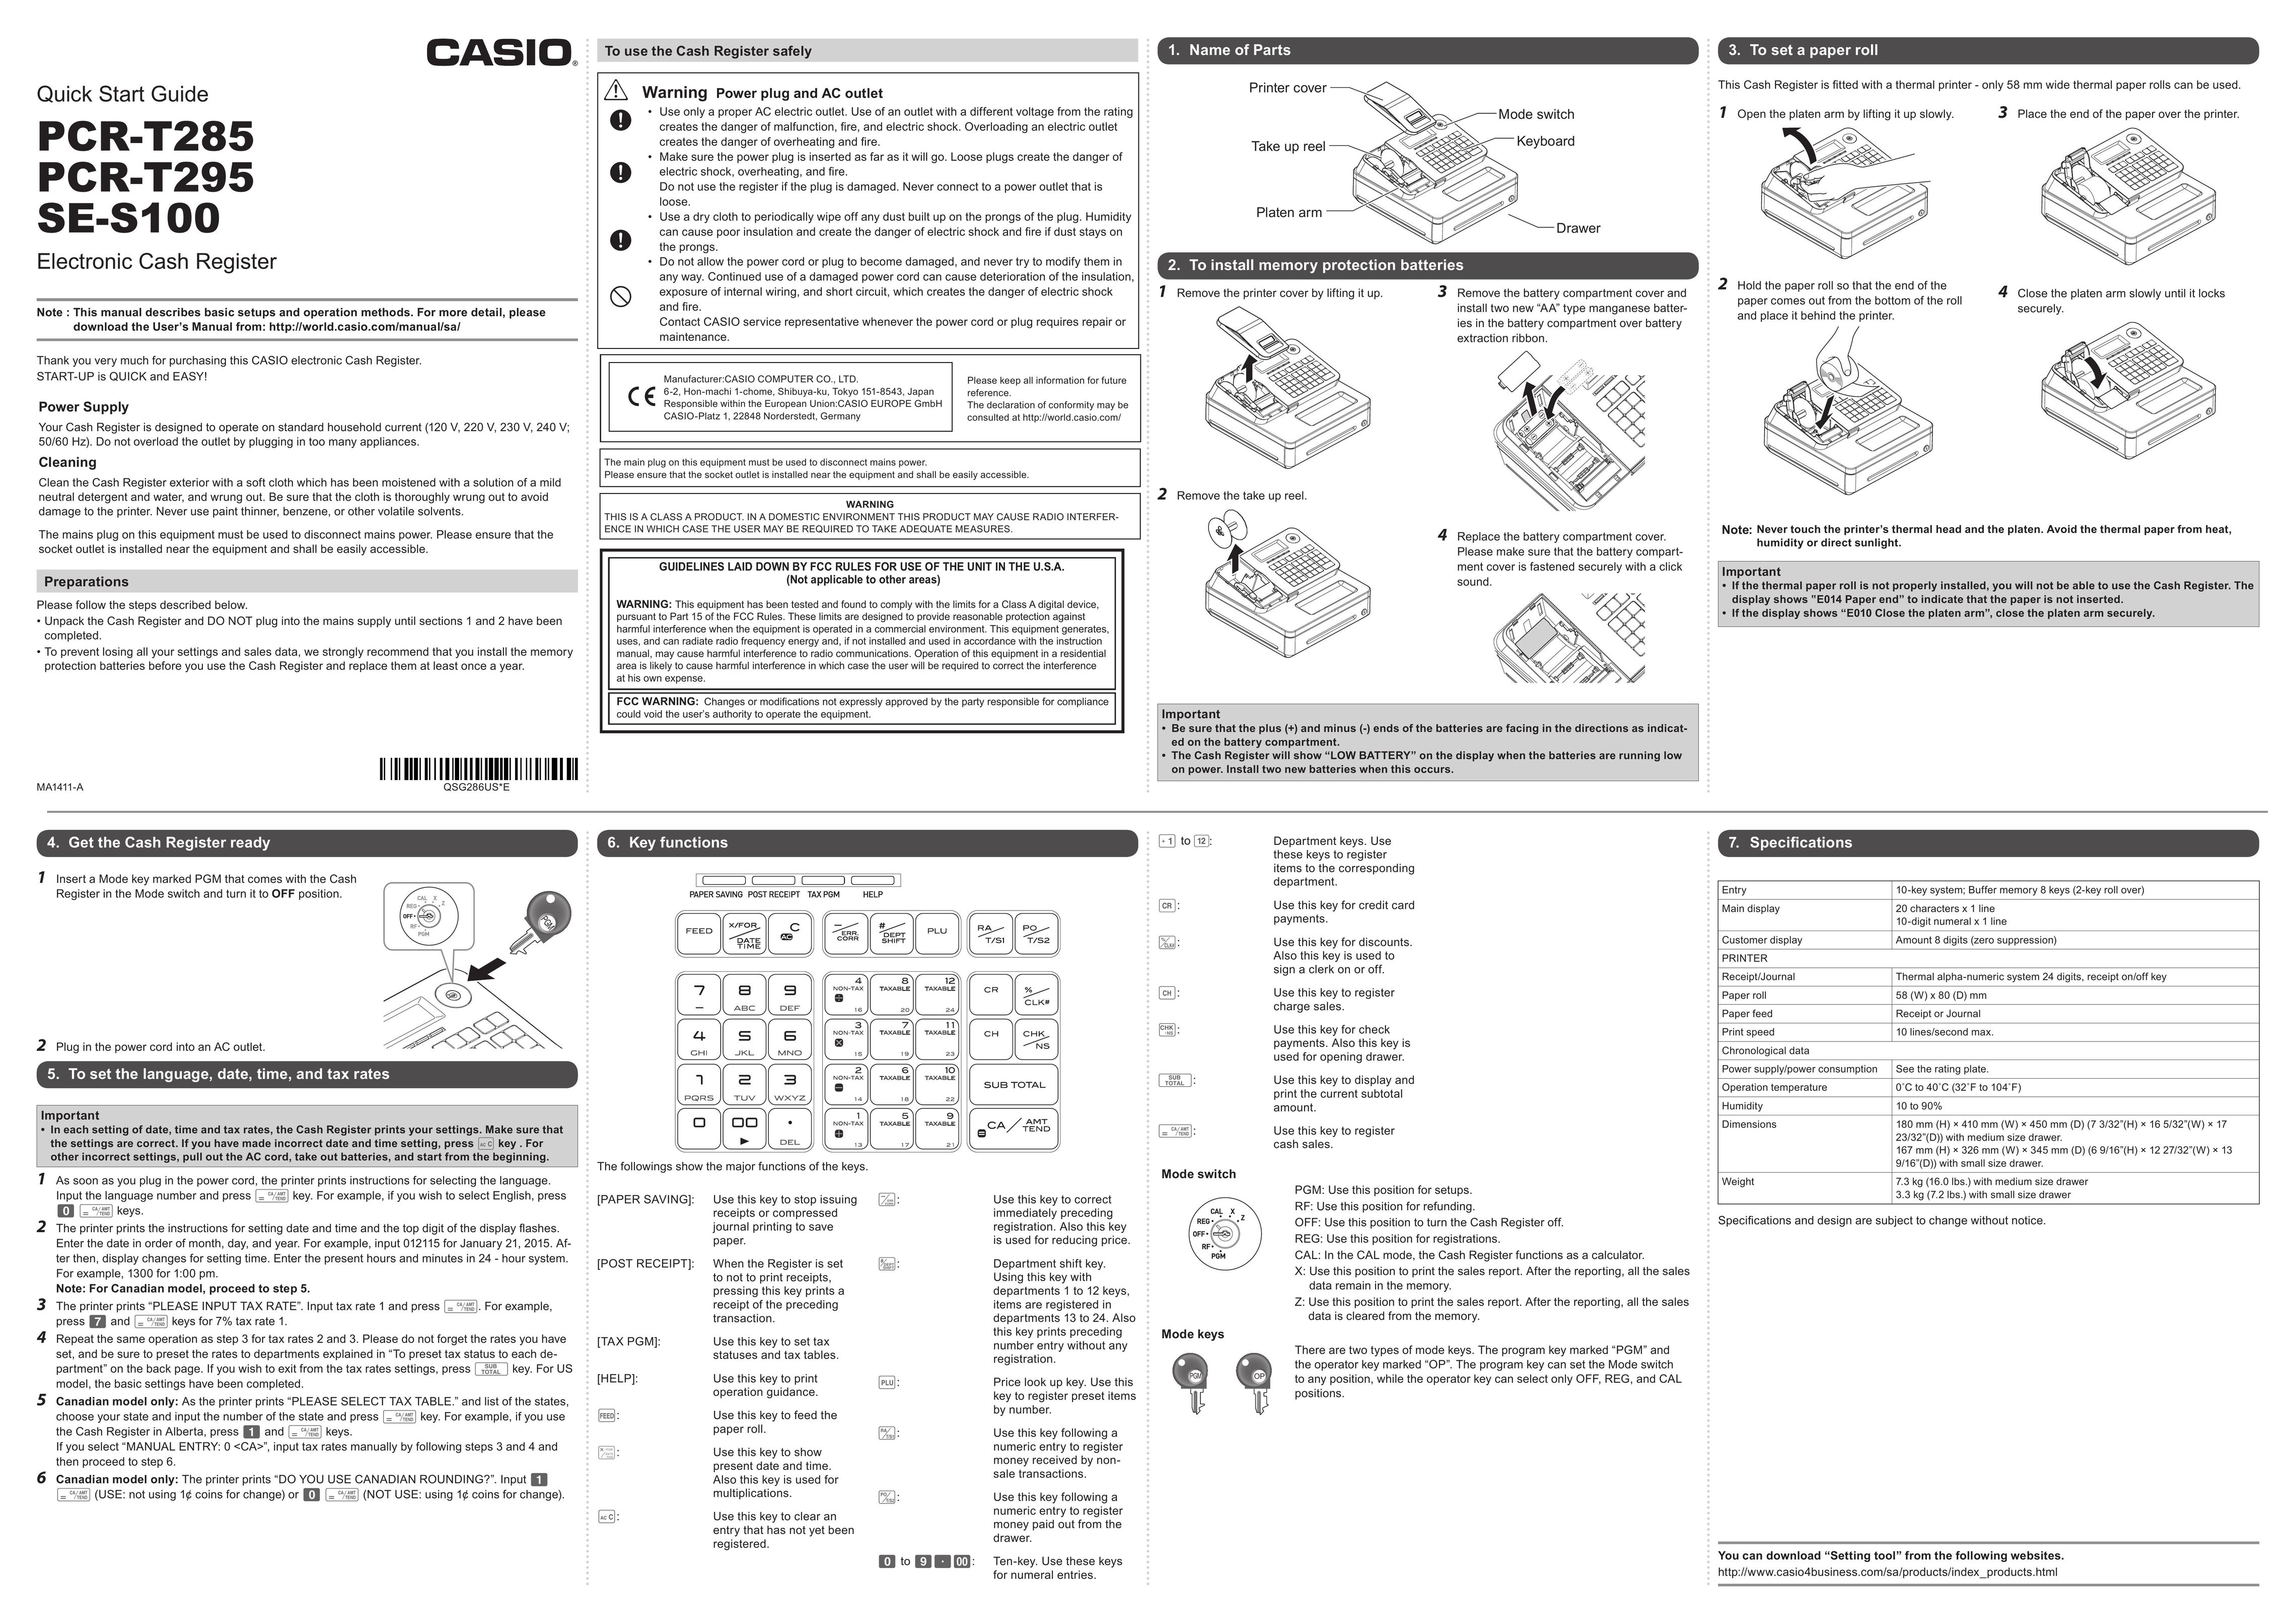 Casio PCR-T295 Cash Register User Manual